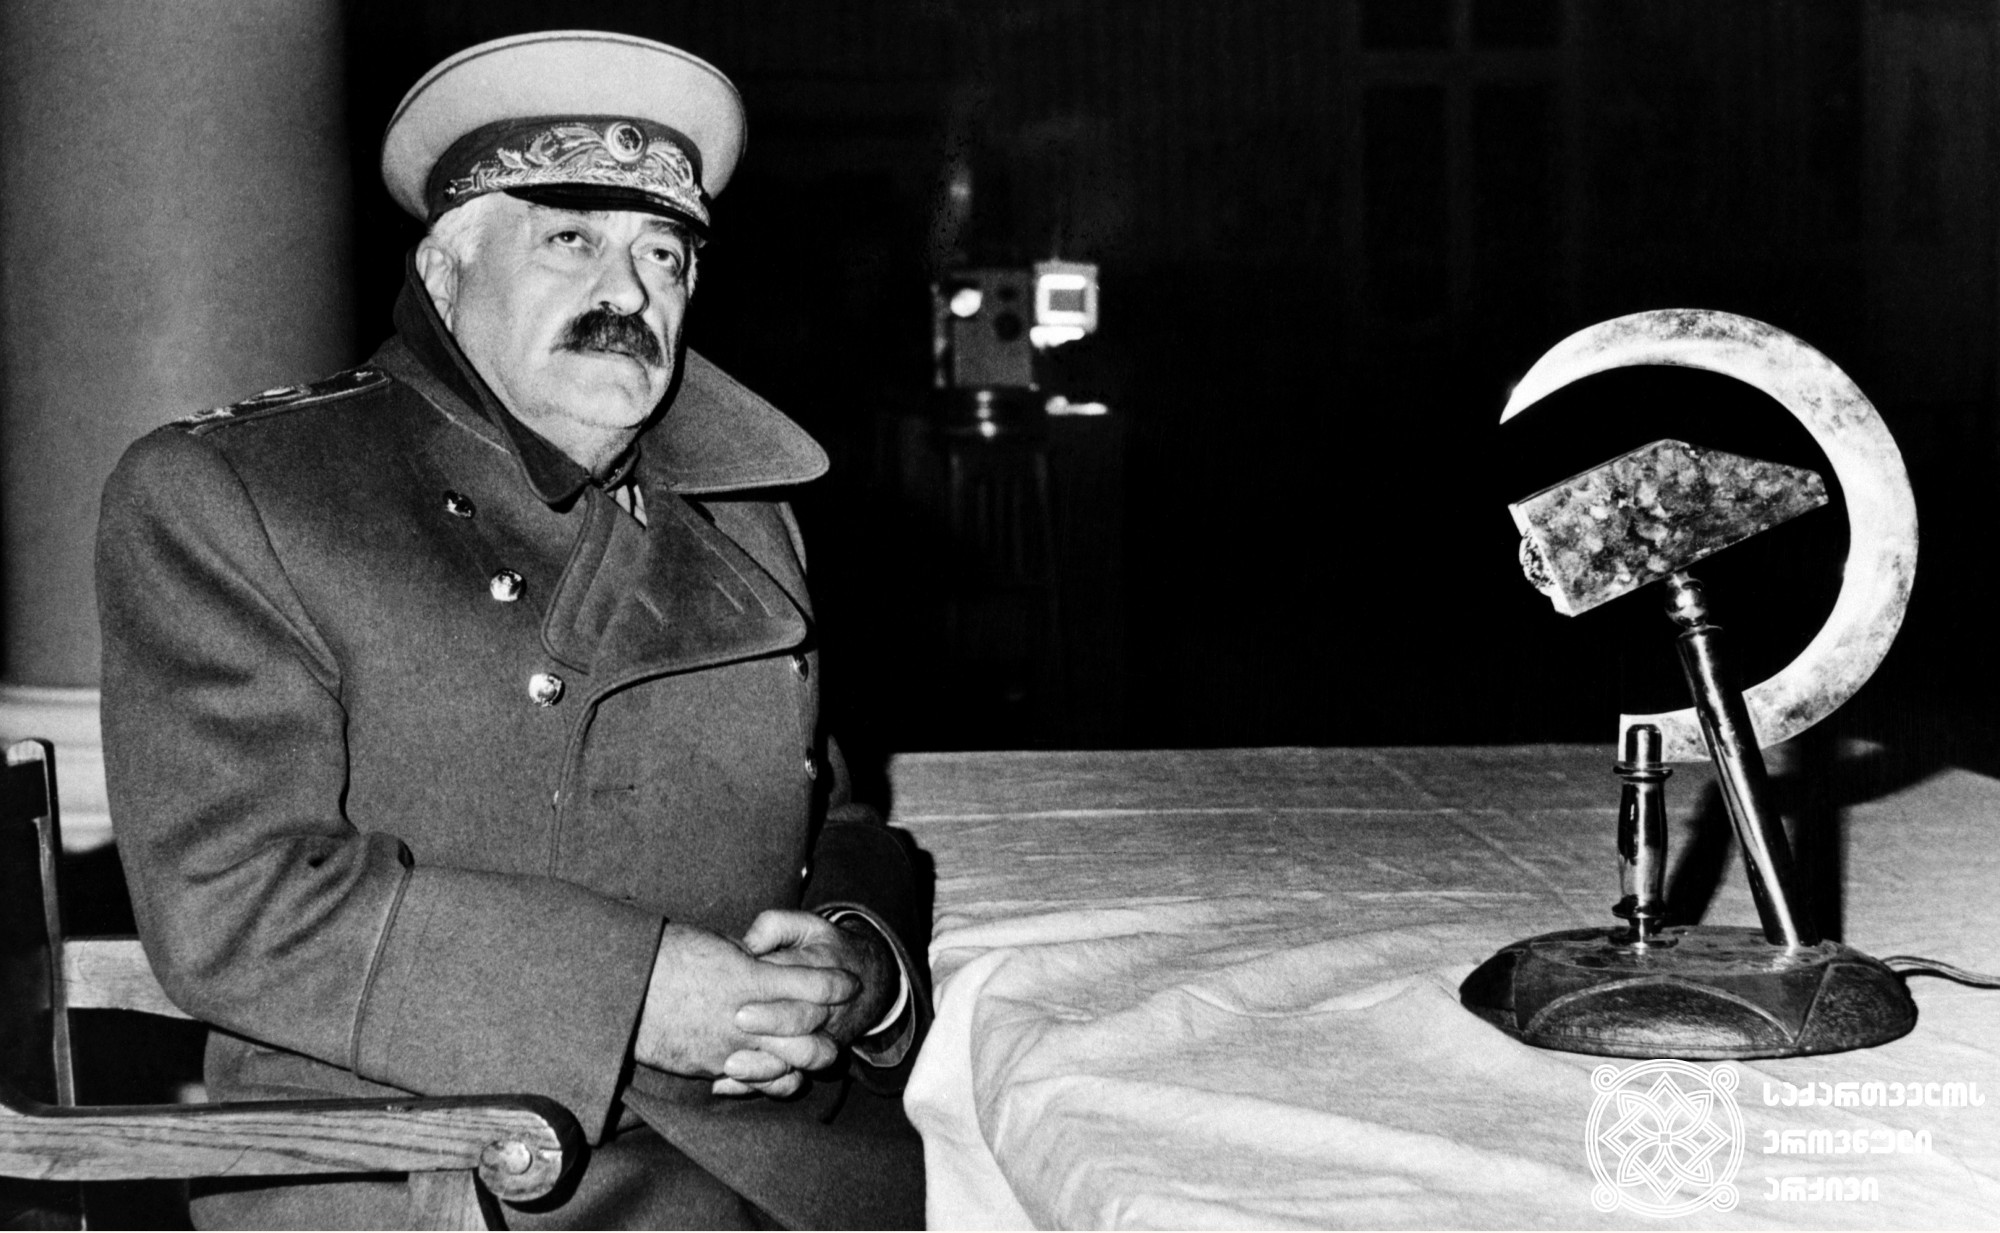 მხატვრული ფილმი „ამხანაგ სტალინის მოგზაურობა აფრიკაში“, ფიჩხაძე, სტალინის ორეული  - რამაზ ჩხიკვაძე. <br>
ვასილი შუტოვის ფოტო.  <br>
1990 წელი.<br>

Feature film " The Journey of Comrade Stalin to Africa", Ramaz Chkhikvadze as Pichkhadze/Stalin's Double. <br>
Photo by Vasily Shutov. <br>
1990.